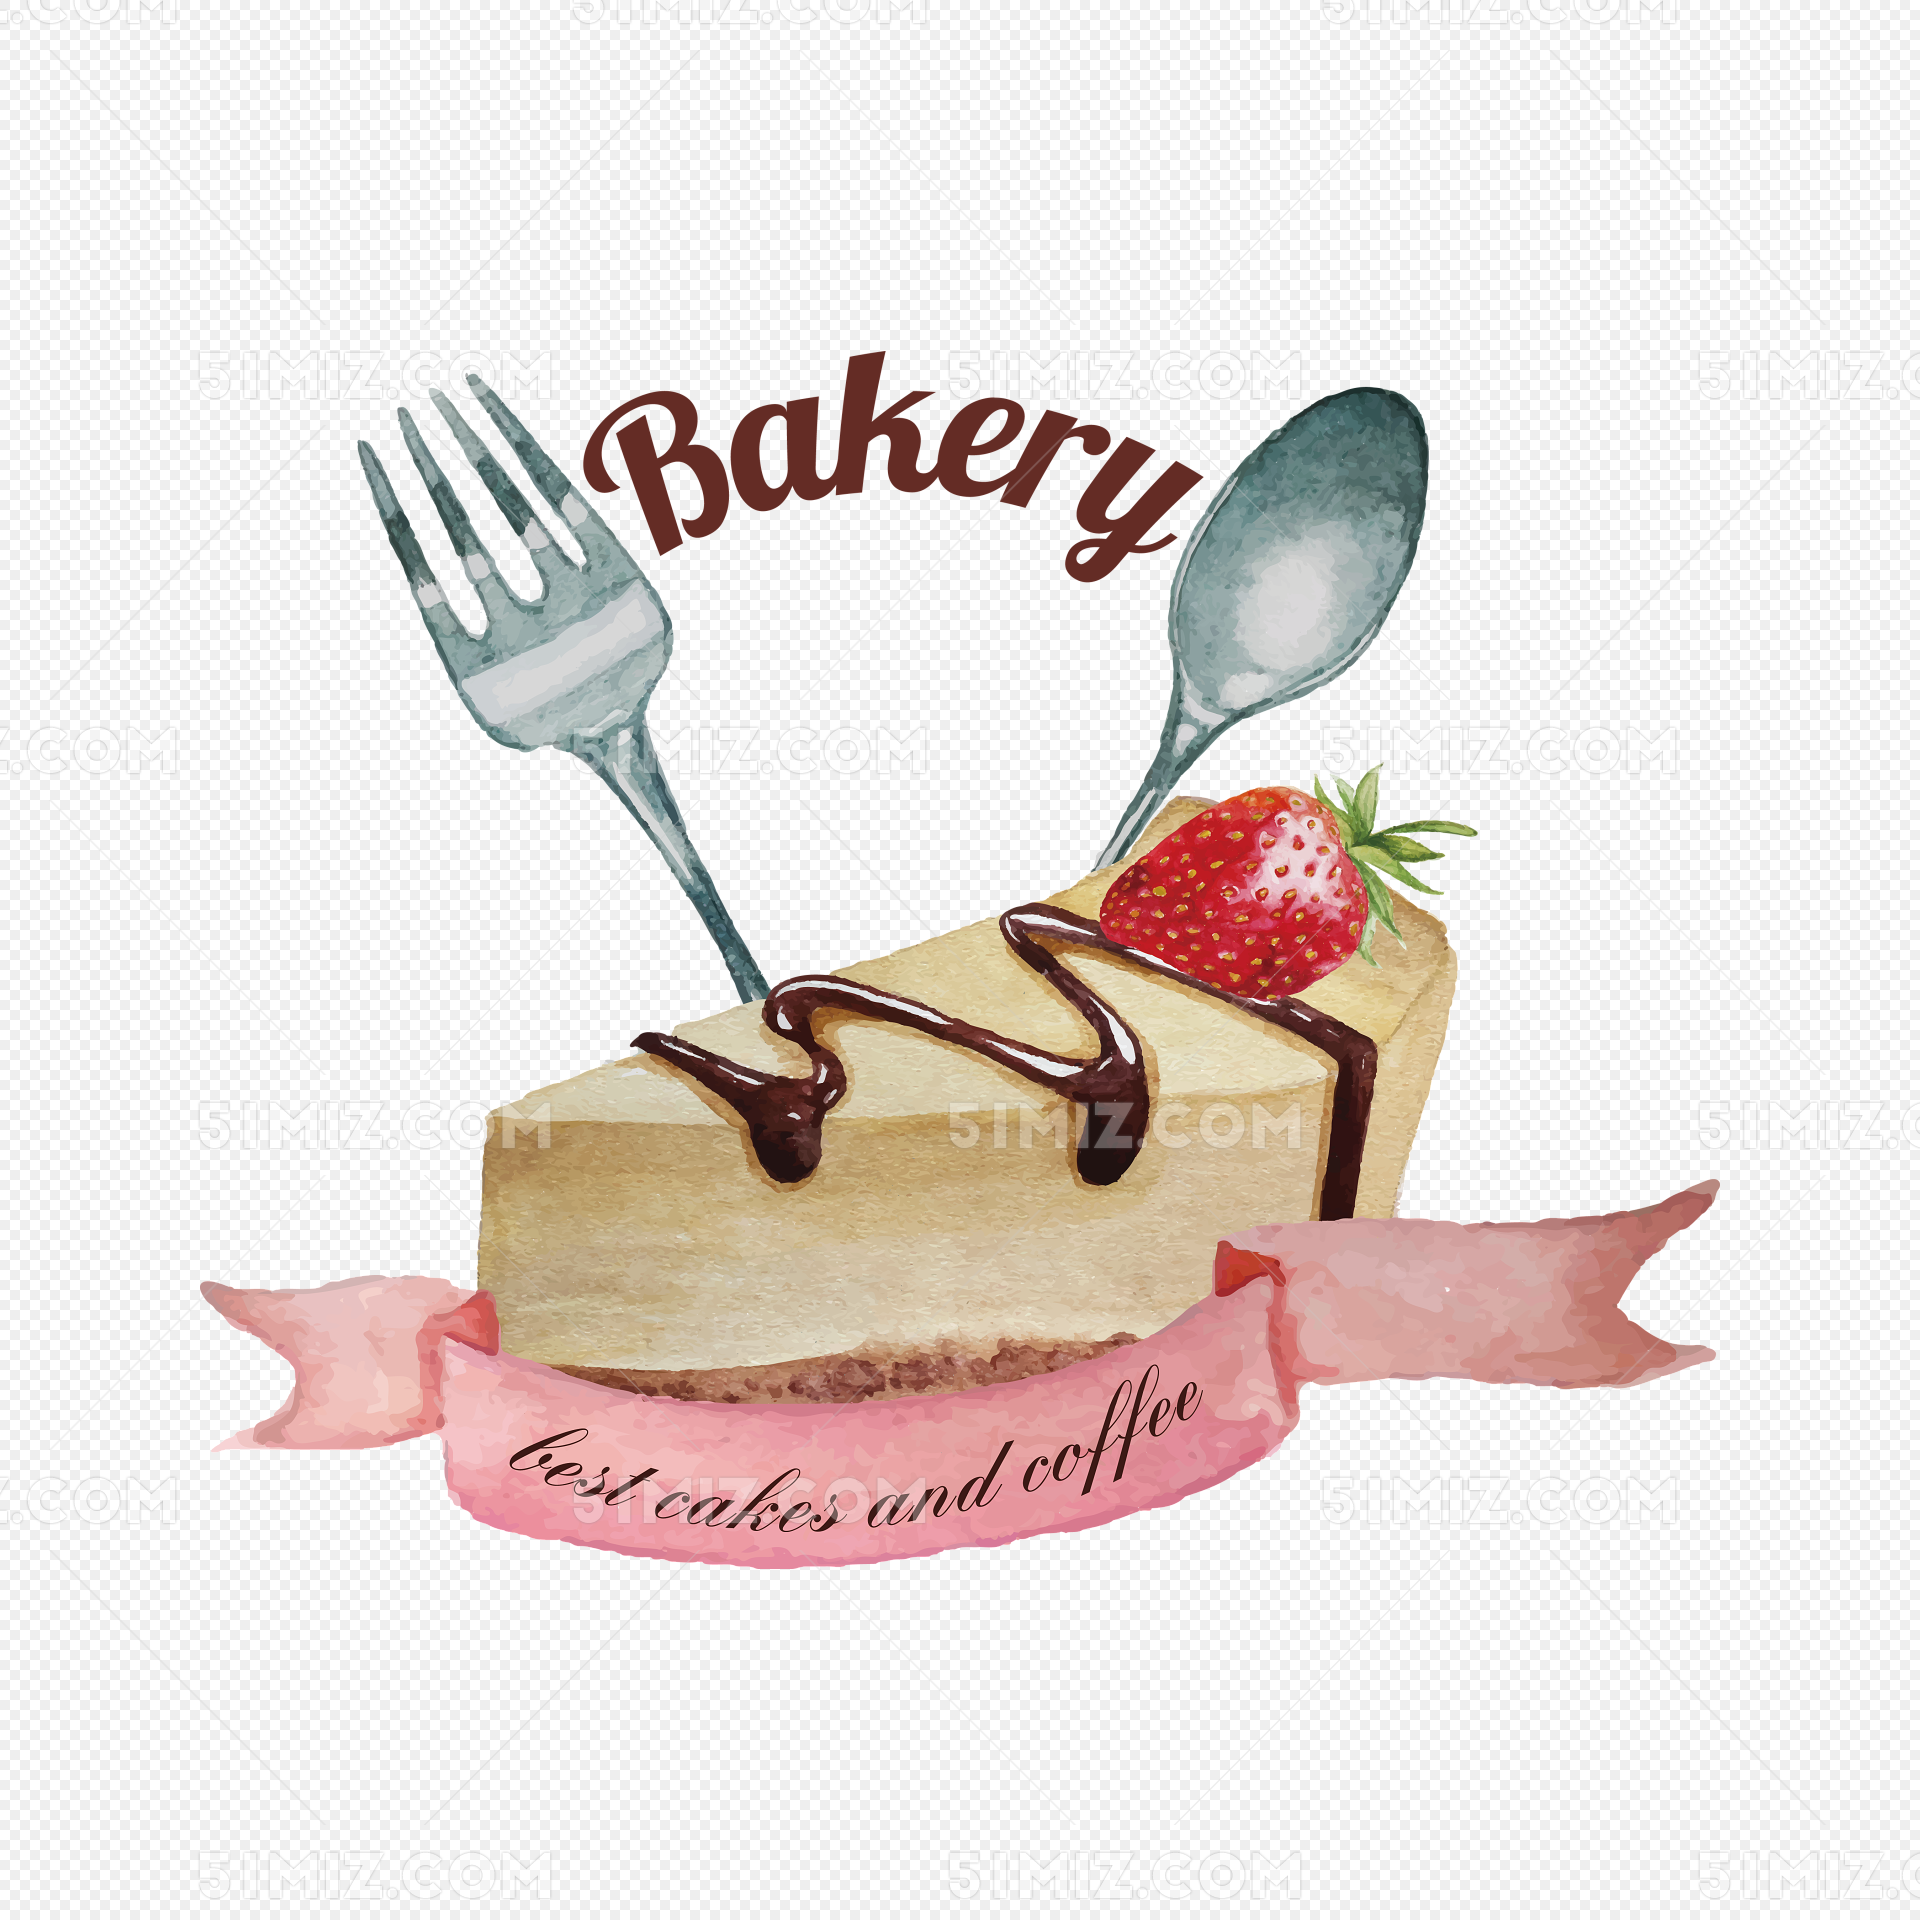 創意手繪甜品美食海報設計背景素材圖桌布手機桌布圖片免費下載 - Pngtree